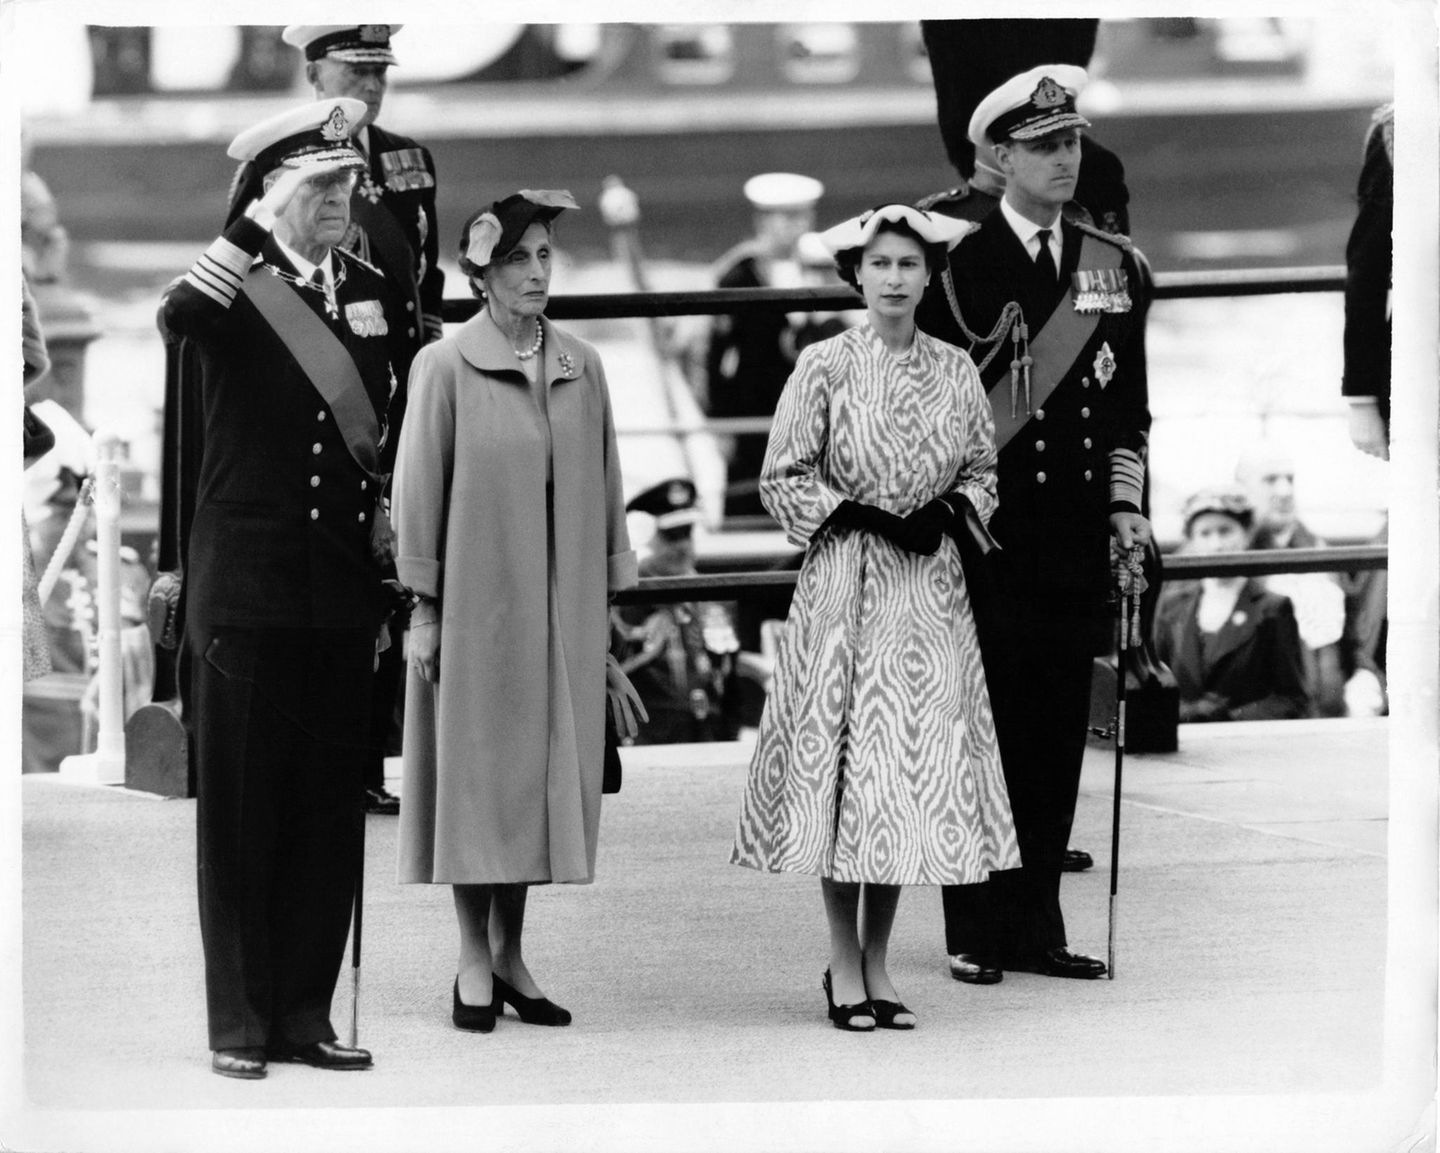 König Gustaf VI Adolf von Schweden, Königin Louise Mountbatten, Queen Elizabeth und Prinz Philip